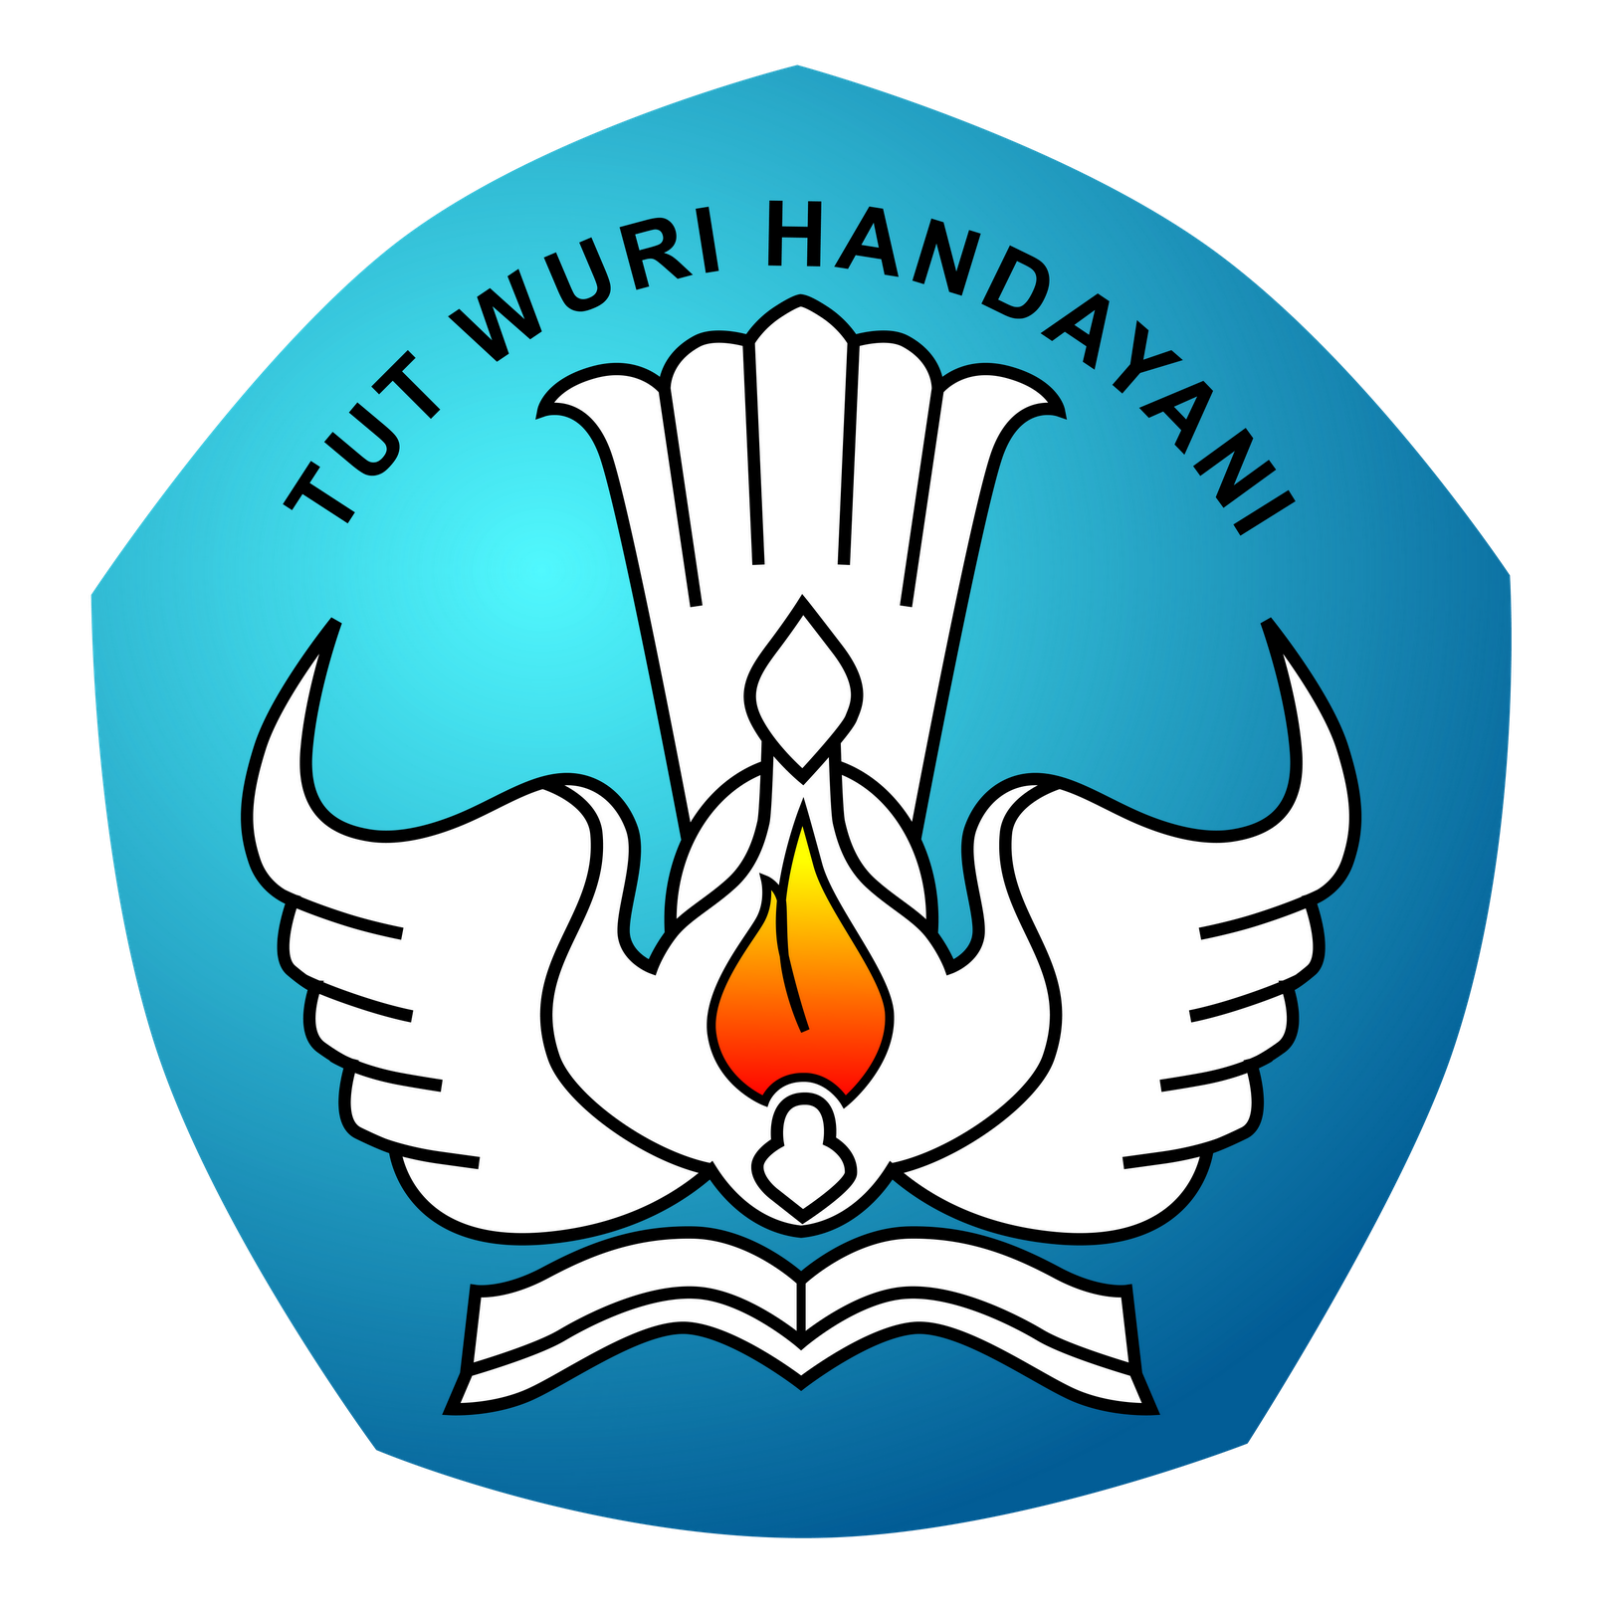 Logo Sd Hitam Putih Cari Logo